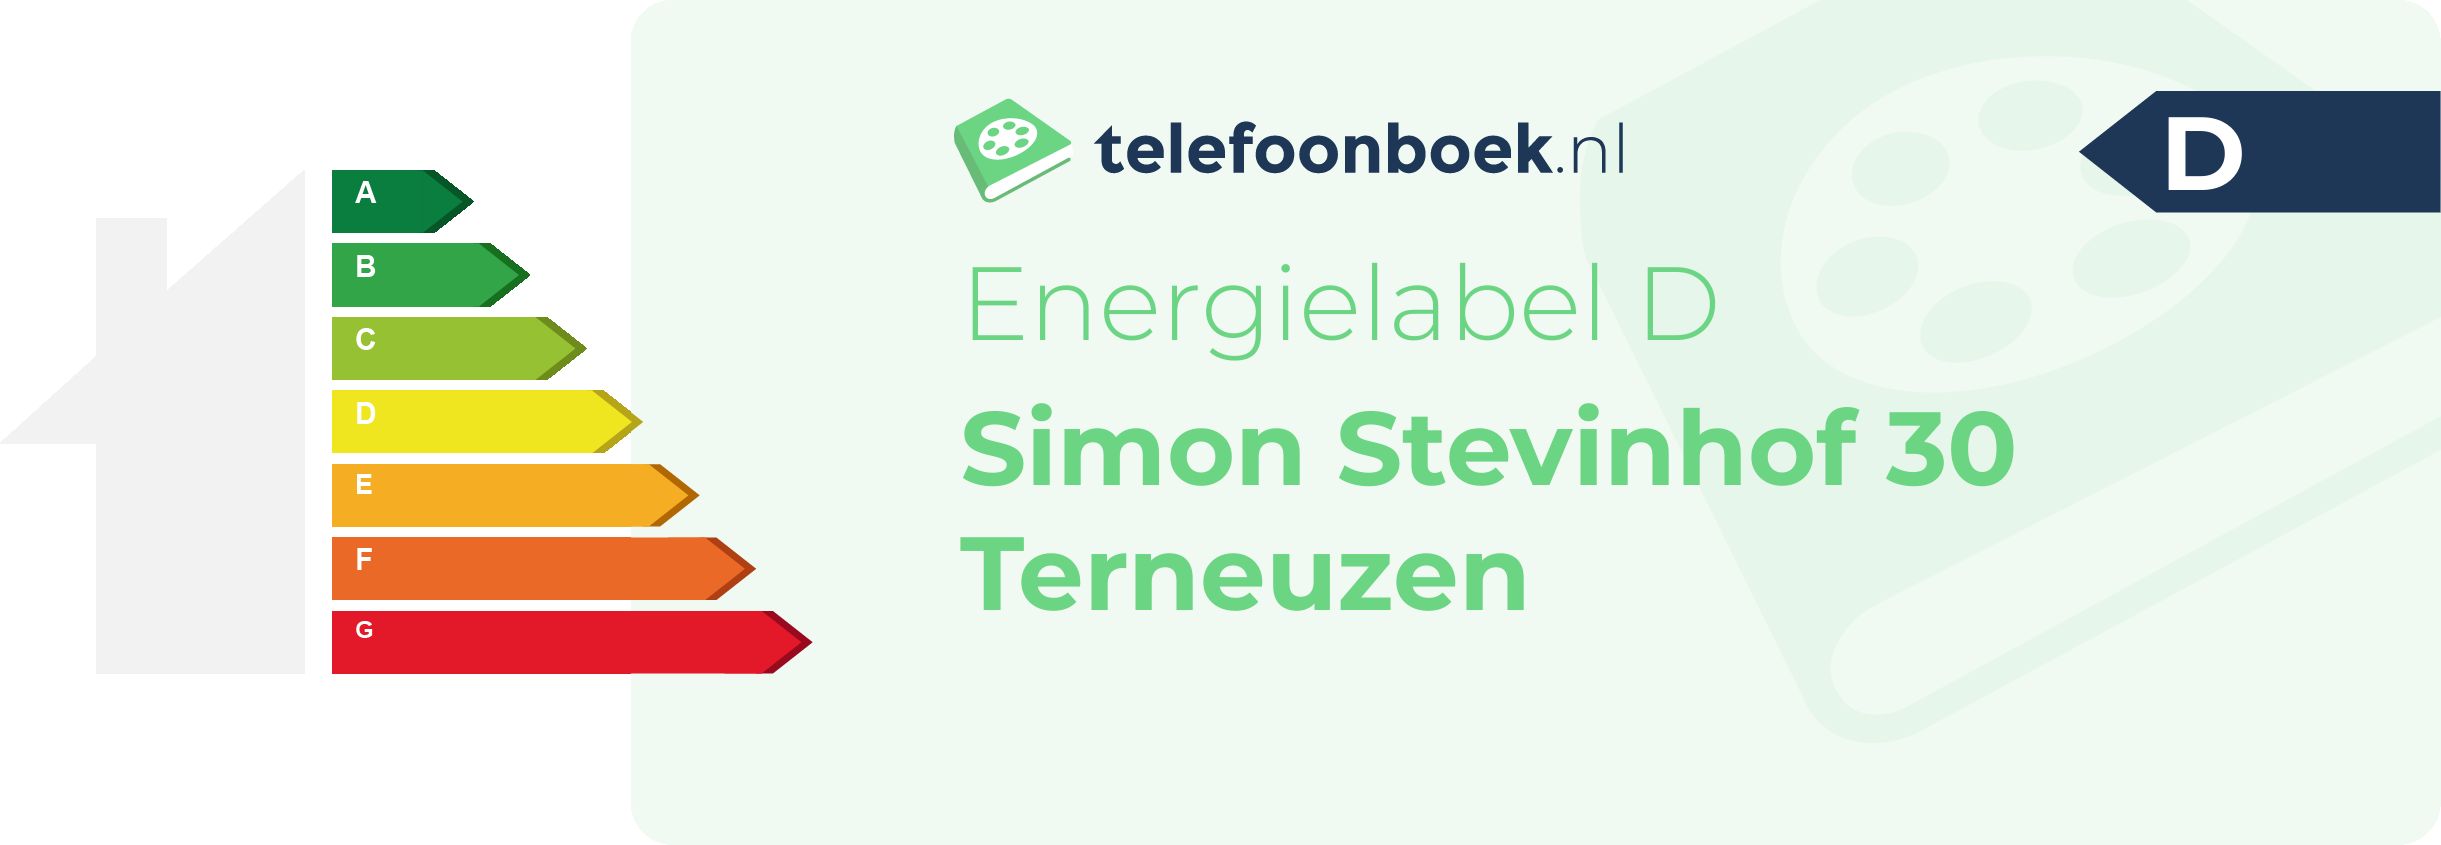 Energielabel Simon Stevinhof 30 Terneuzen